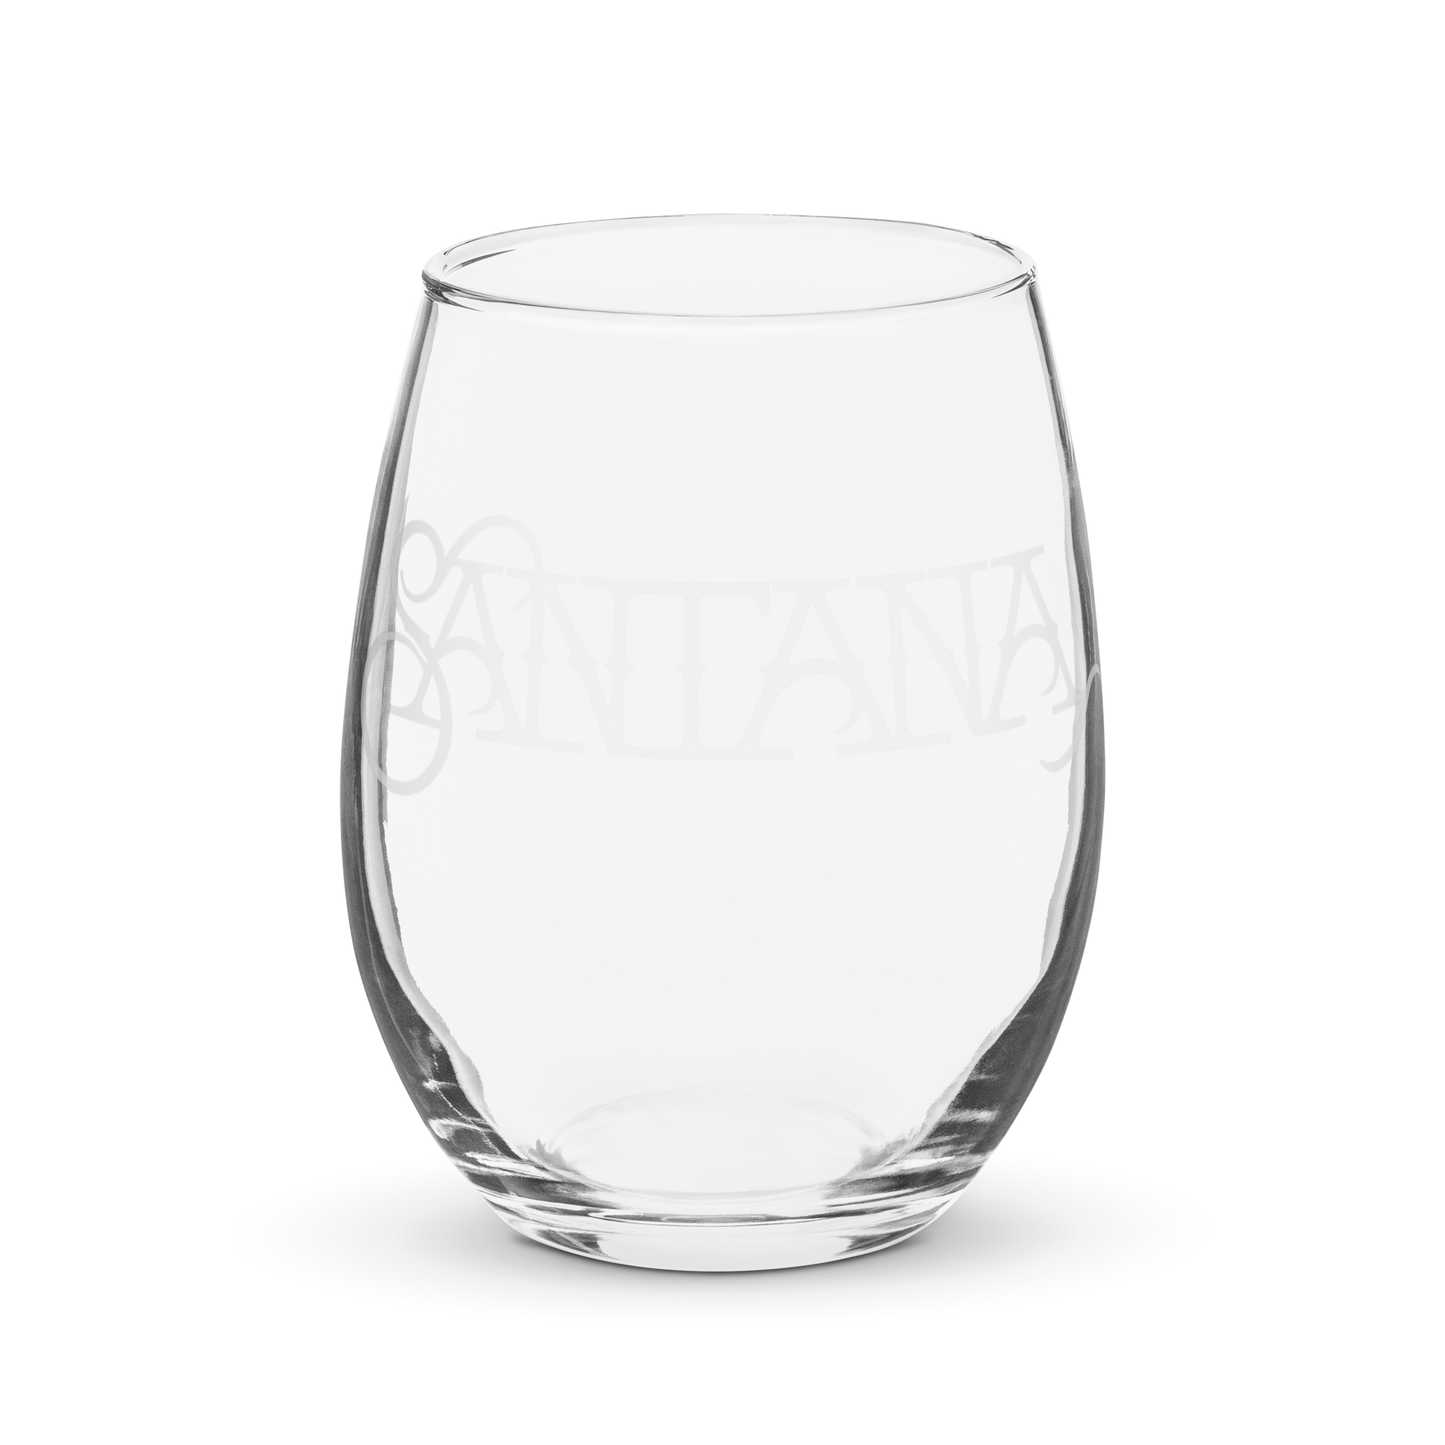 Santana Logo Stemless wine glass